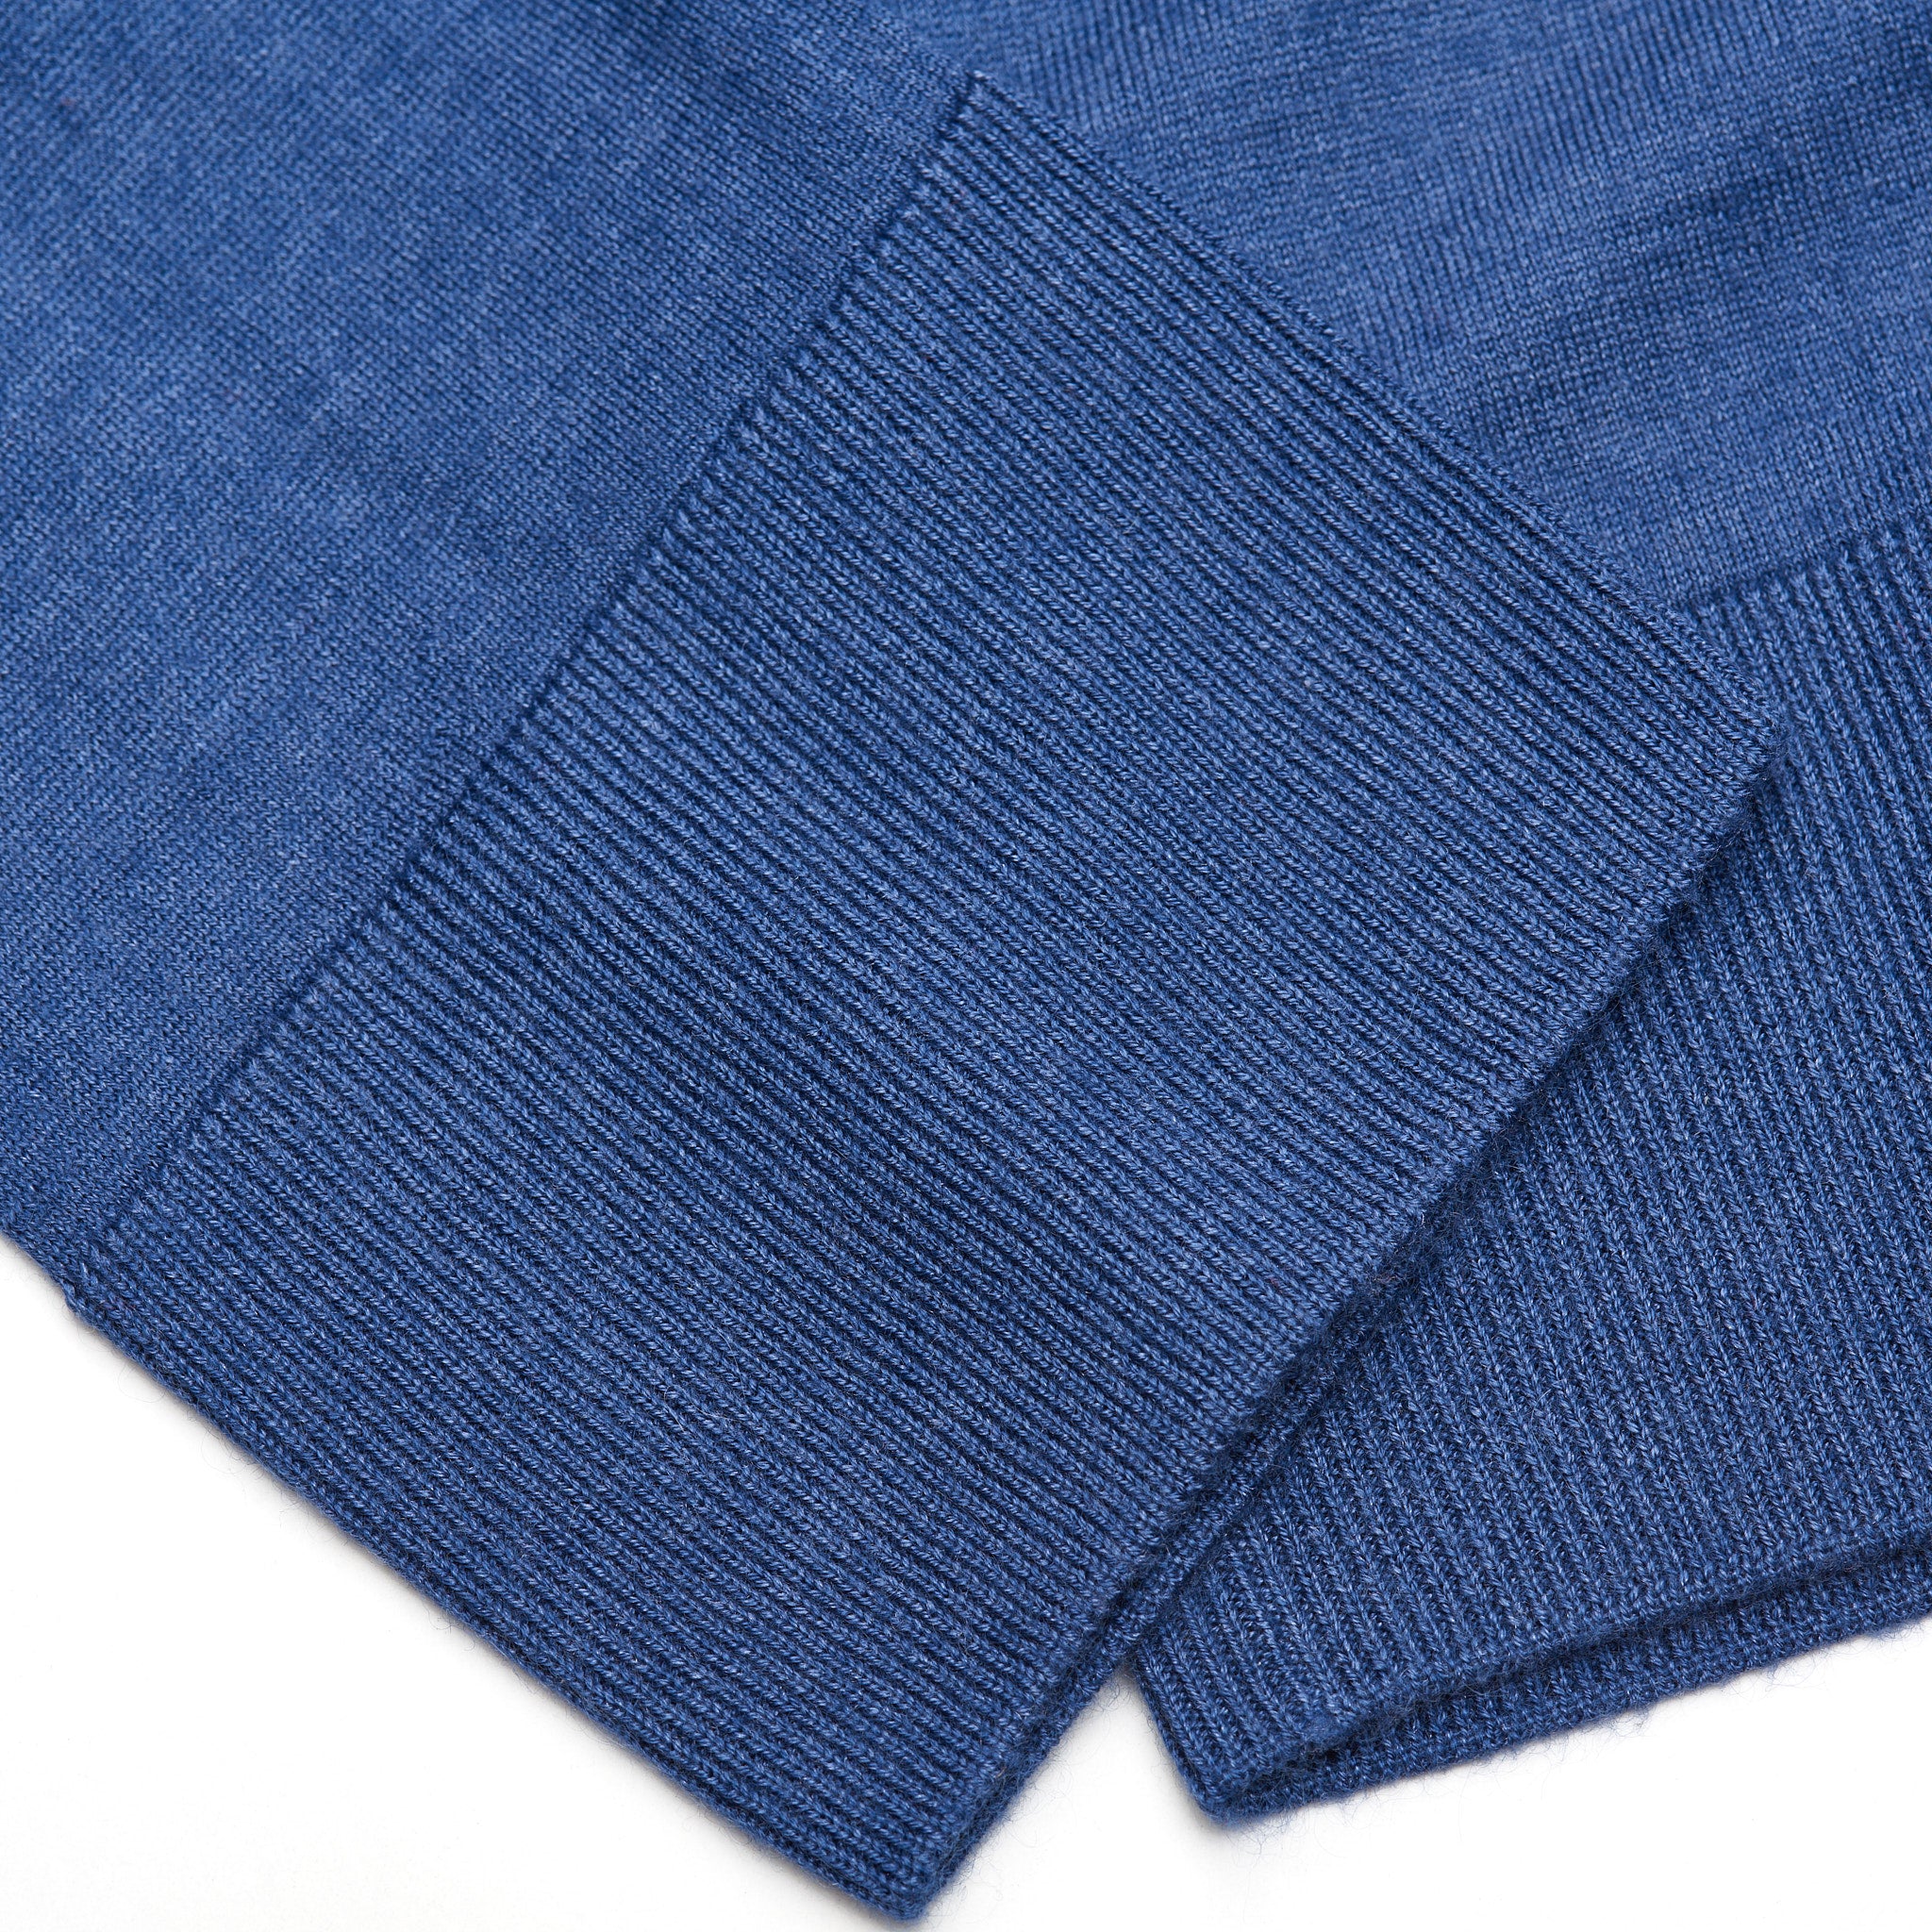 FEDELI "Millionaire" Blue 14 Micron Super Cashmere Zip Neck Sweater 46 NEW XS FEDELI